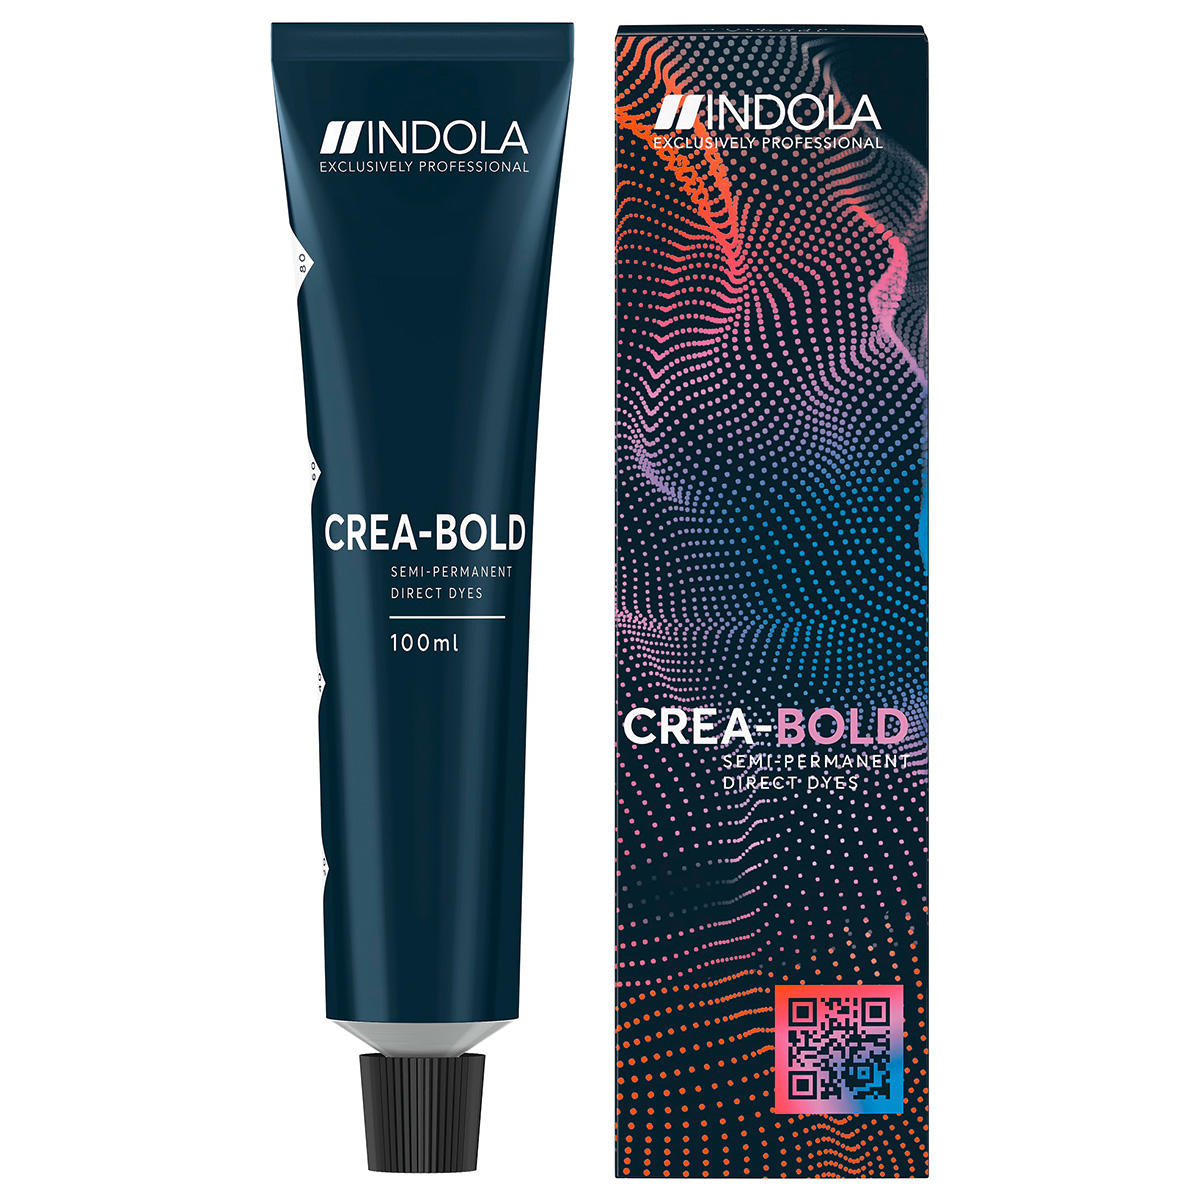 Indola CREA-BOLD Semi-Permanent Direct Dyes Giallo canarino 100 ml - 2